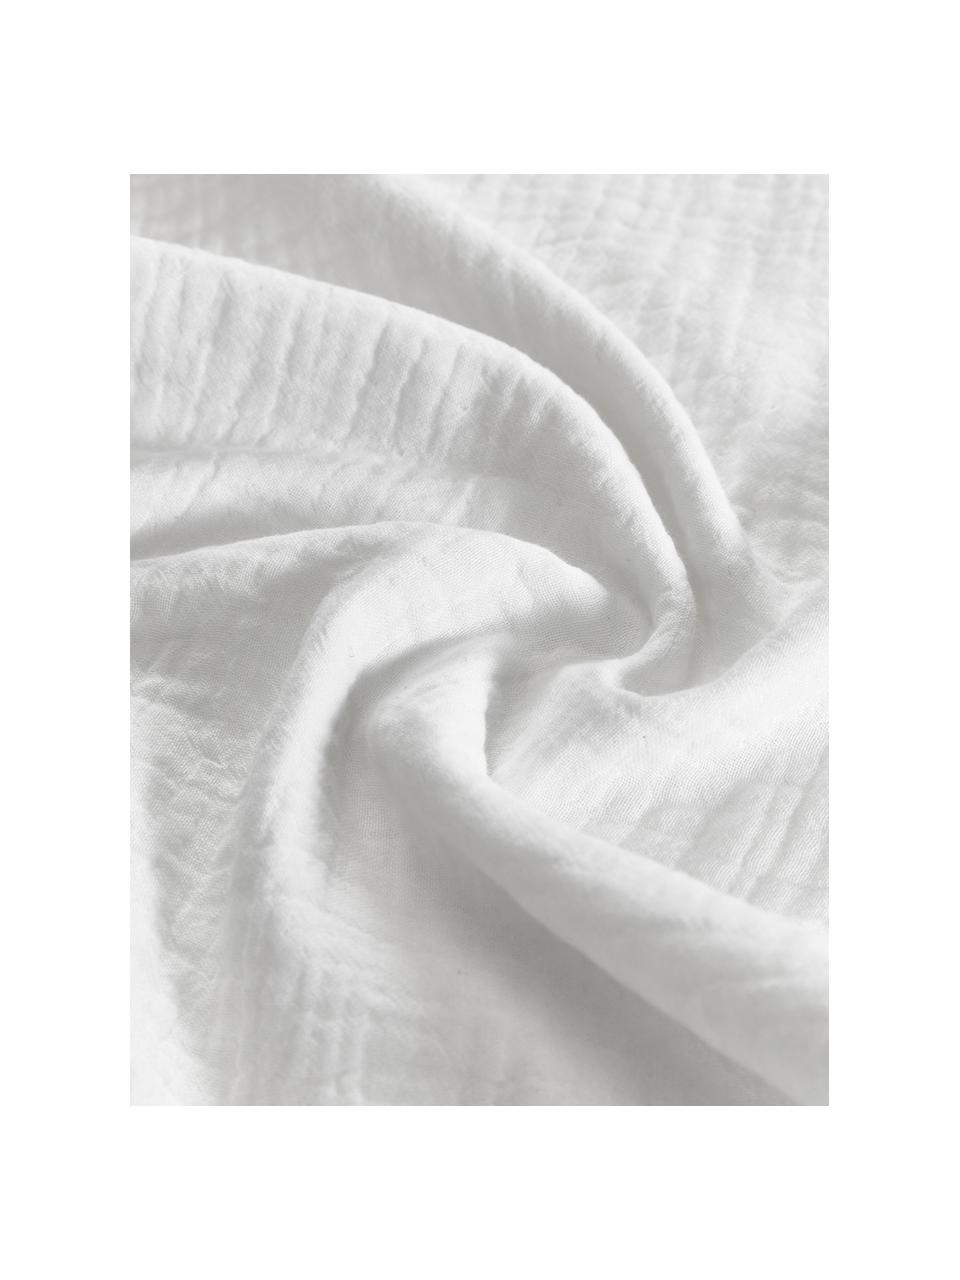 Musselin-Kopfkissenbezüge aus Baumwolle in Weiß, 2 Stück, Webart: Musselin Fadendichte 200 , Weiß, B 40 x L 80 cm